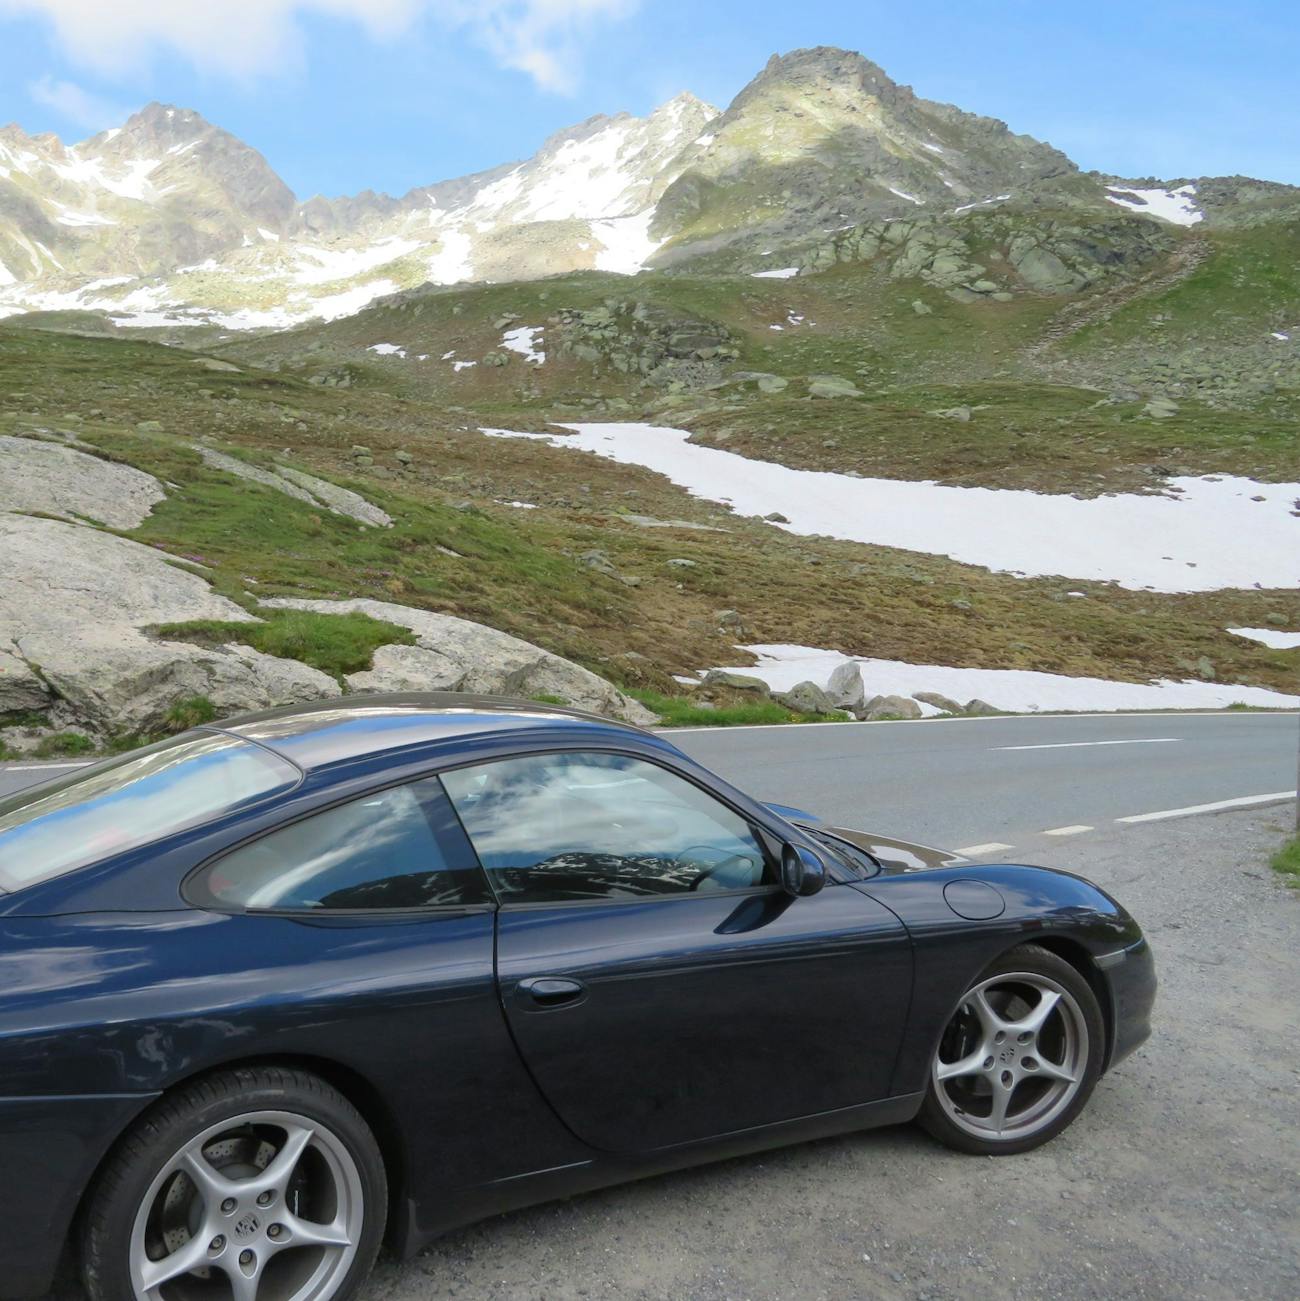 Dark blue Porsche with mountains and snowy fields behind it